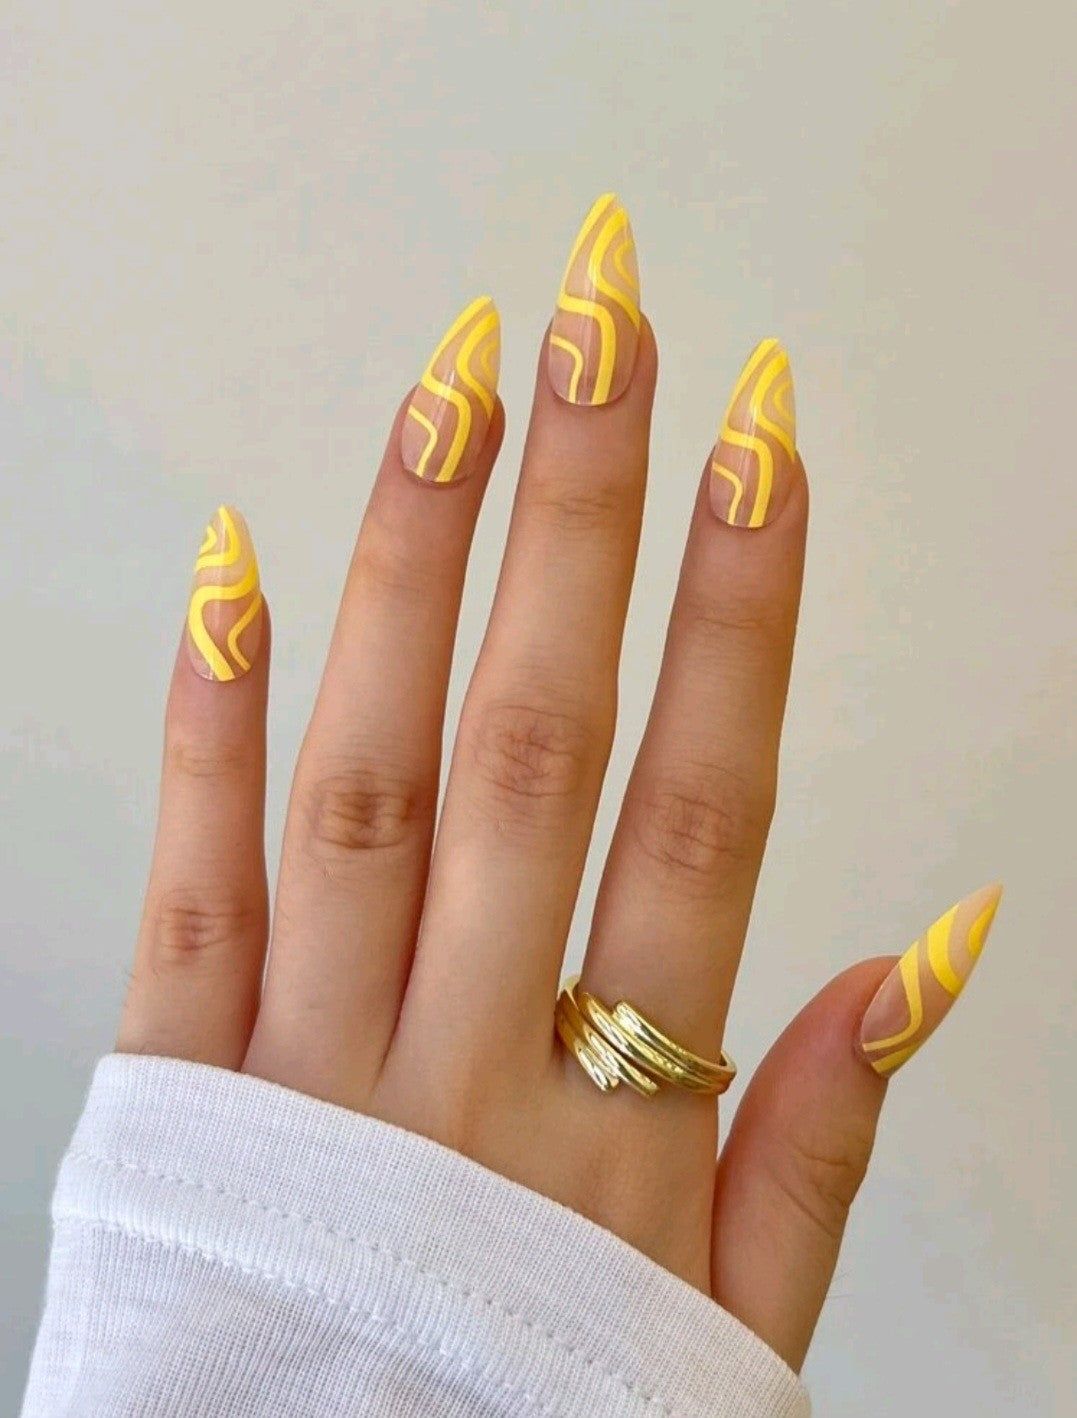 Yellow Nails and Black Leaf Nails Design for Fall - SoSo Nail Art | Yellow  nails, Sns nails colors, Fall nail designs